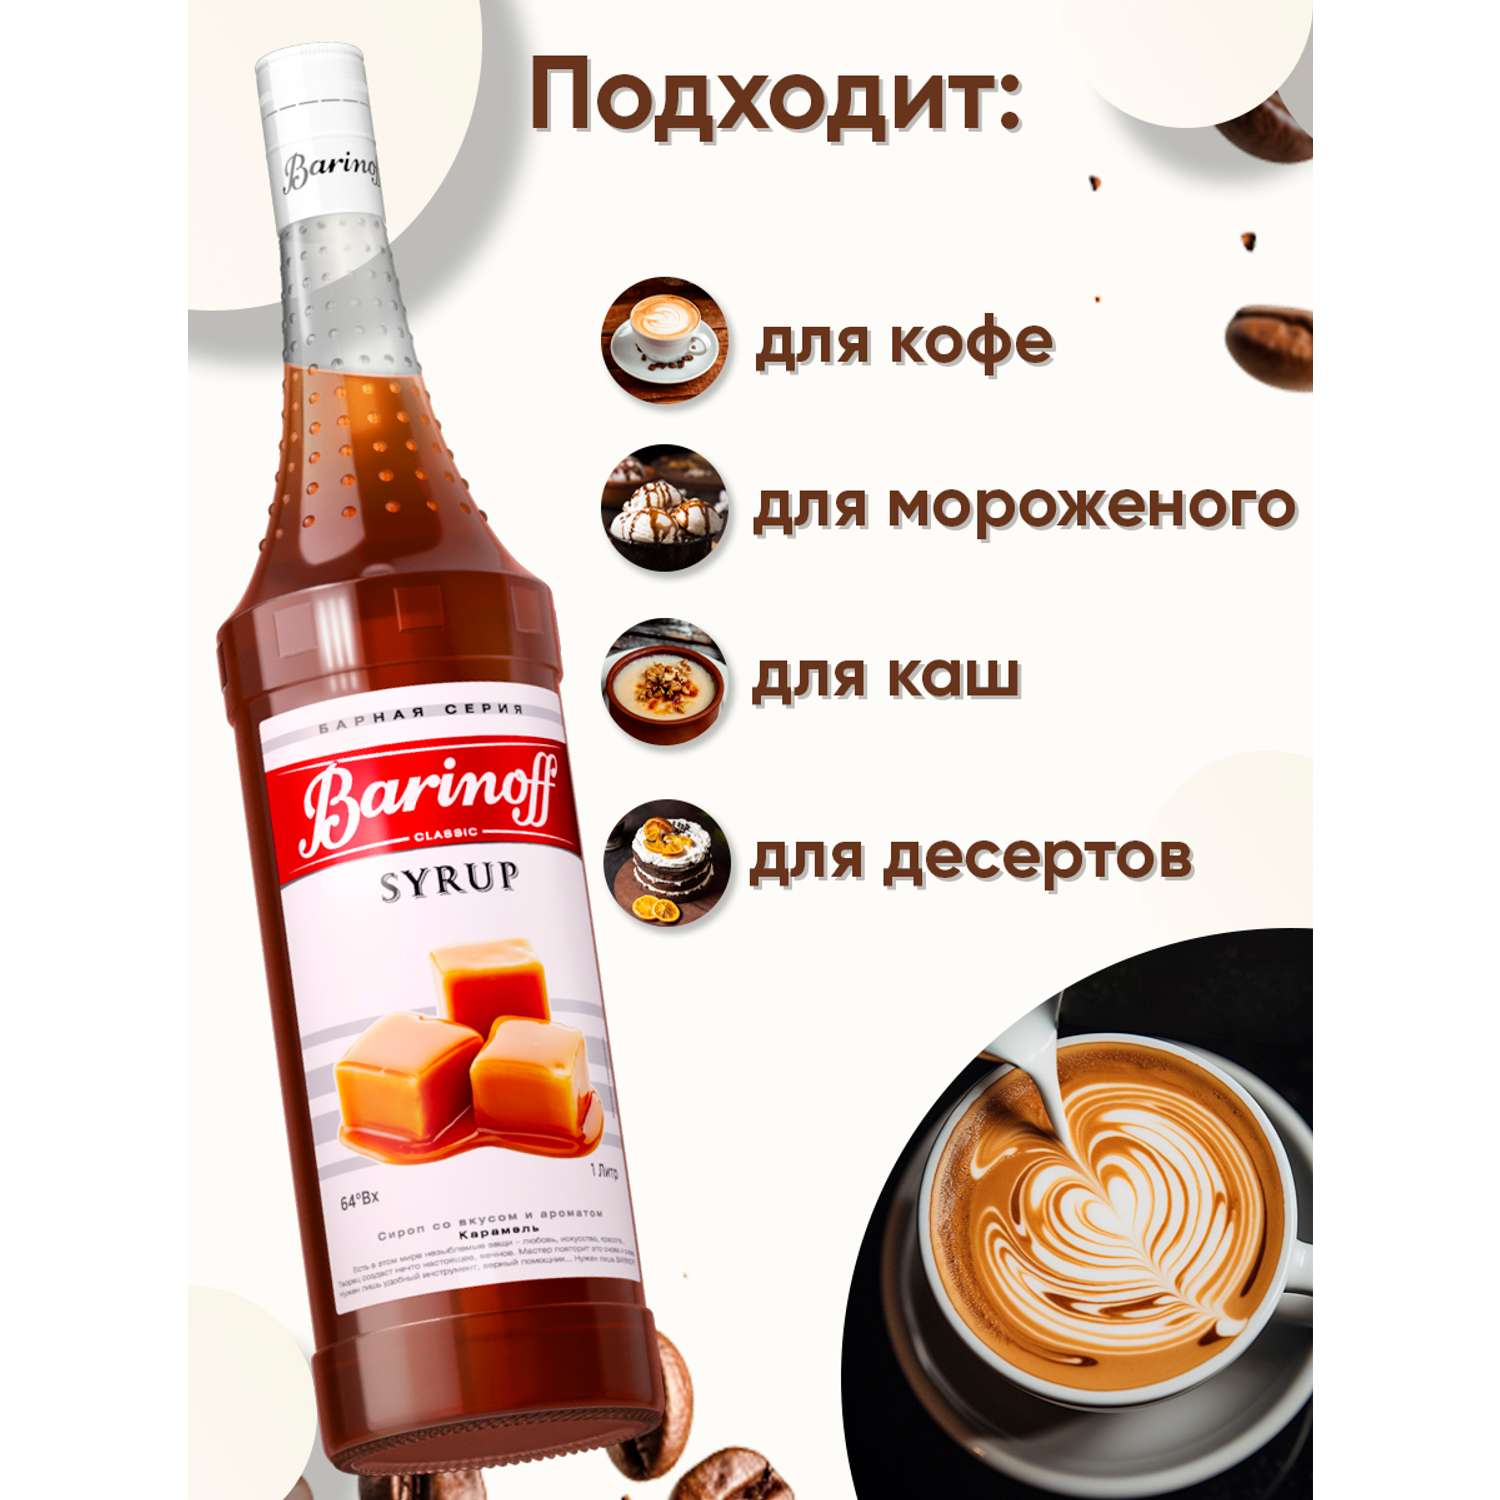 Сироп Barinoff Карамель для кофе и коктейлей 1л - фото 2